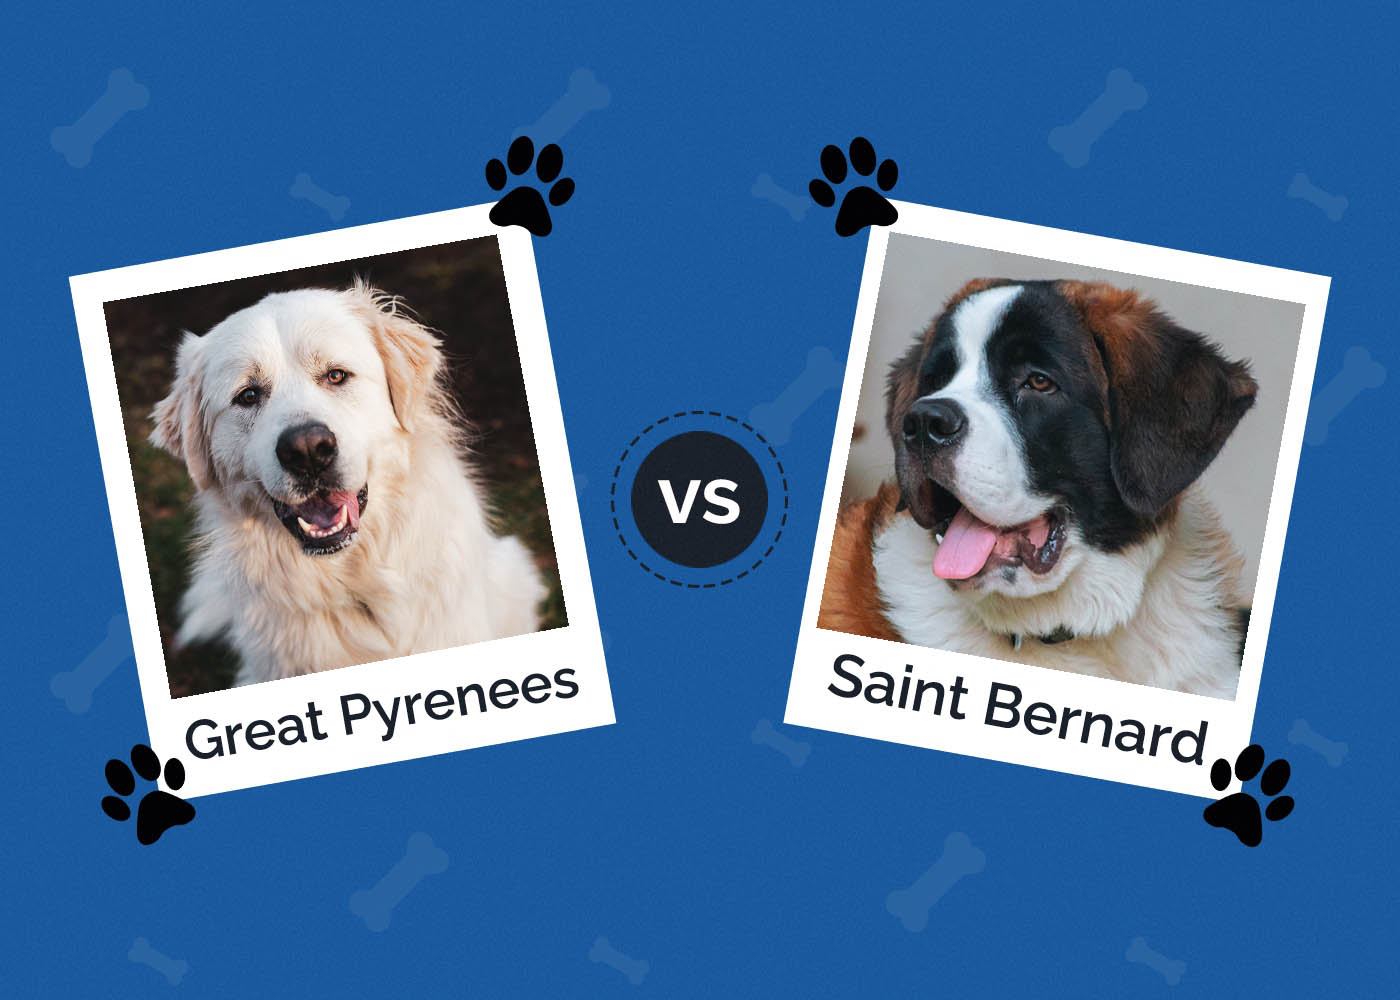 Great Pyrenees vs Saint Bernard